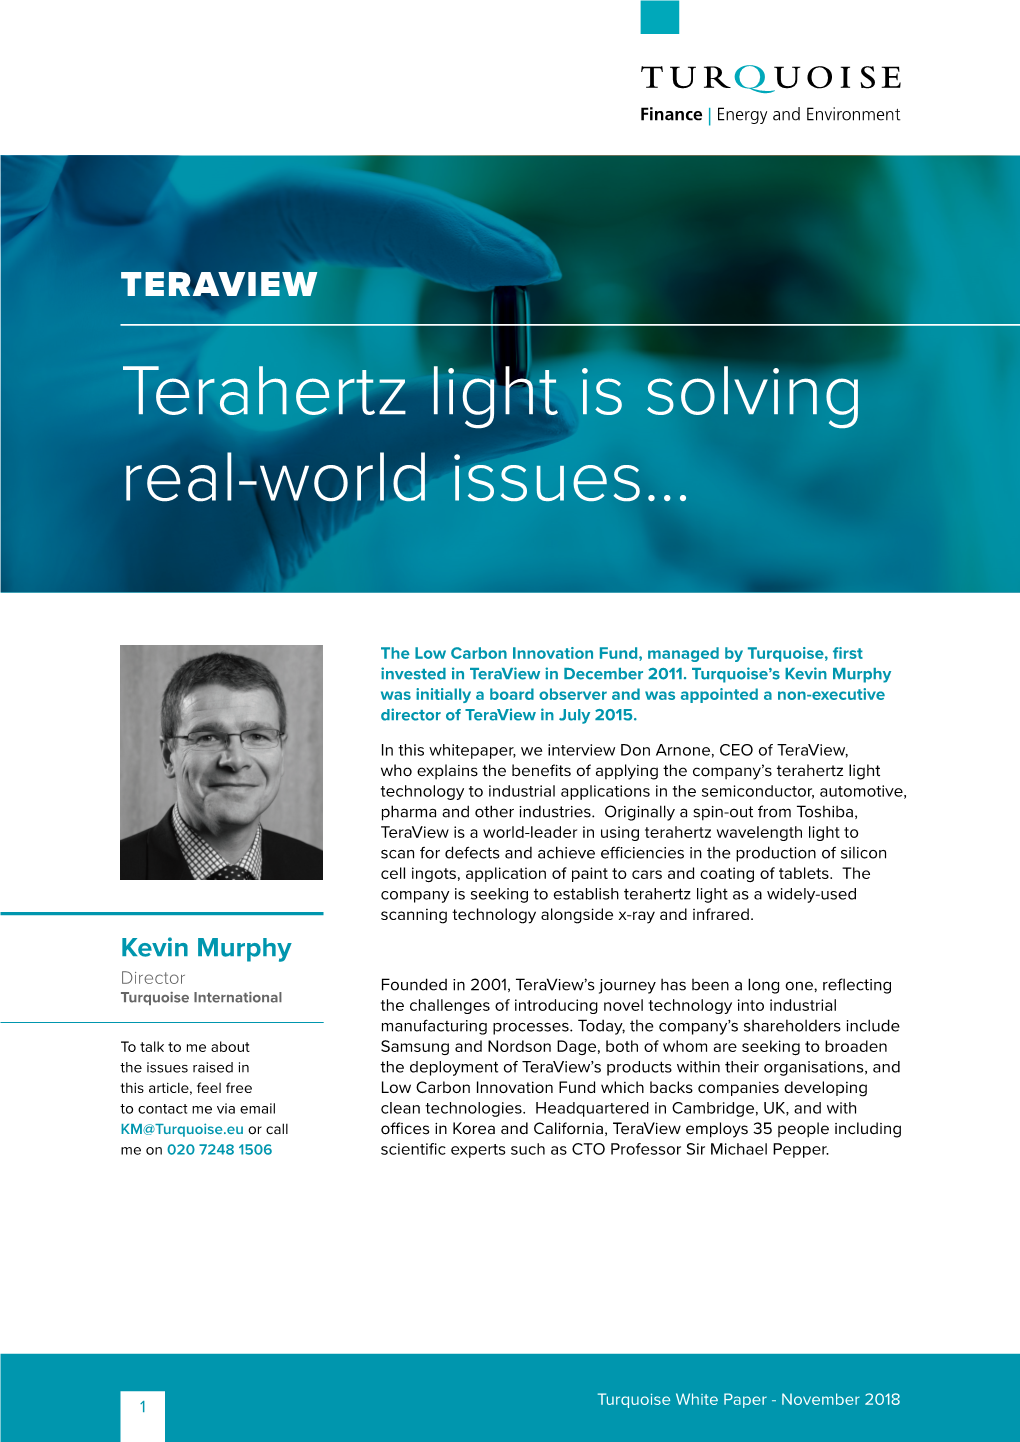 Terahertz Light Is Solving Real-World Issues